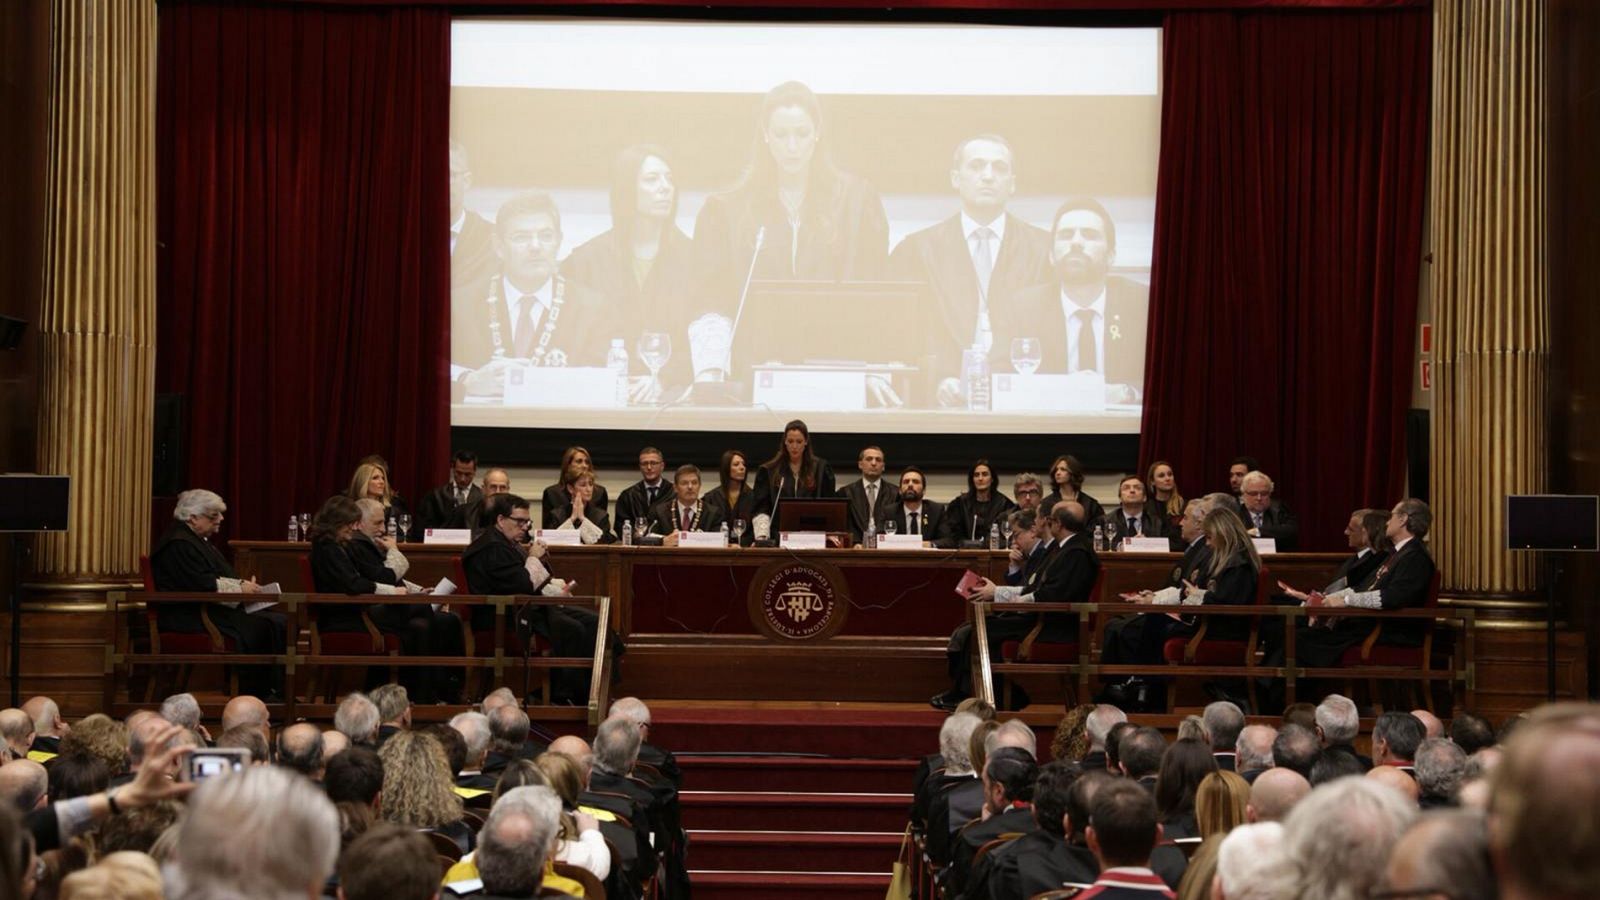 La cúpula judicial de Cataluña abandona un acto al hablar Torrent de "presos políticos" en presencia de Catalá